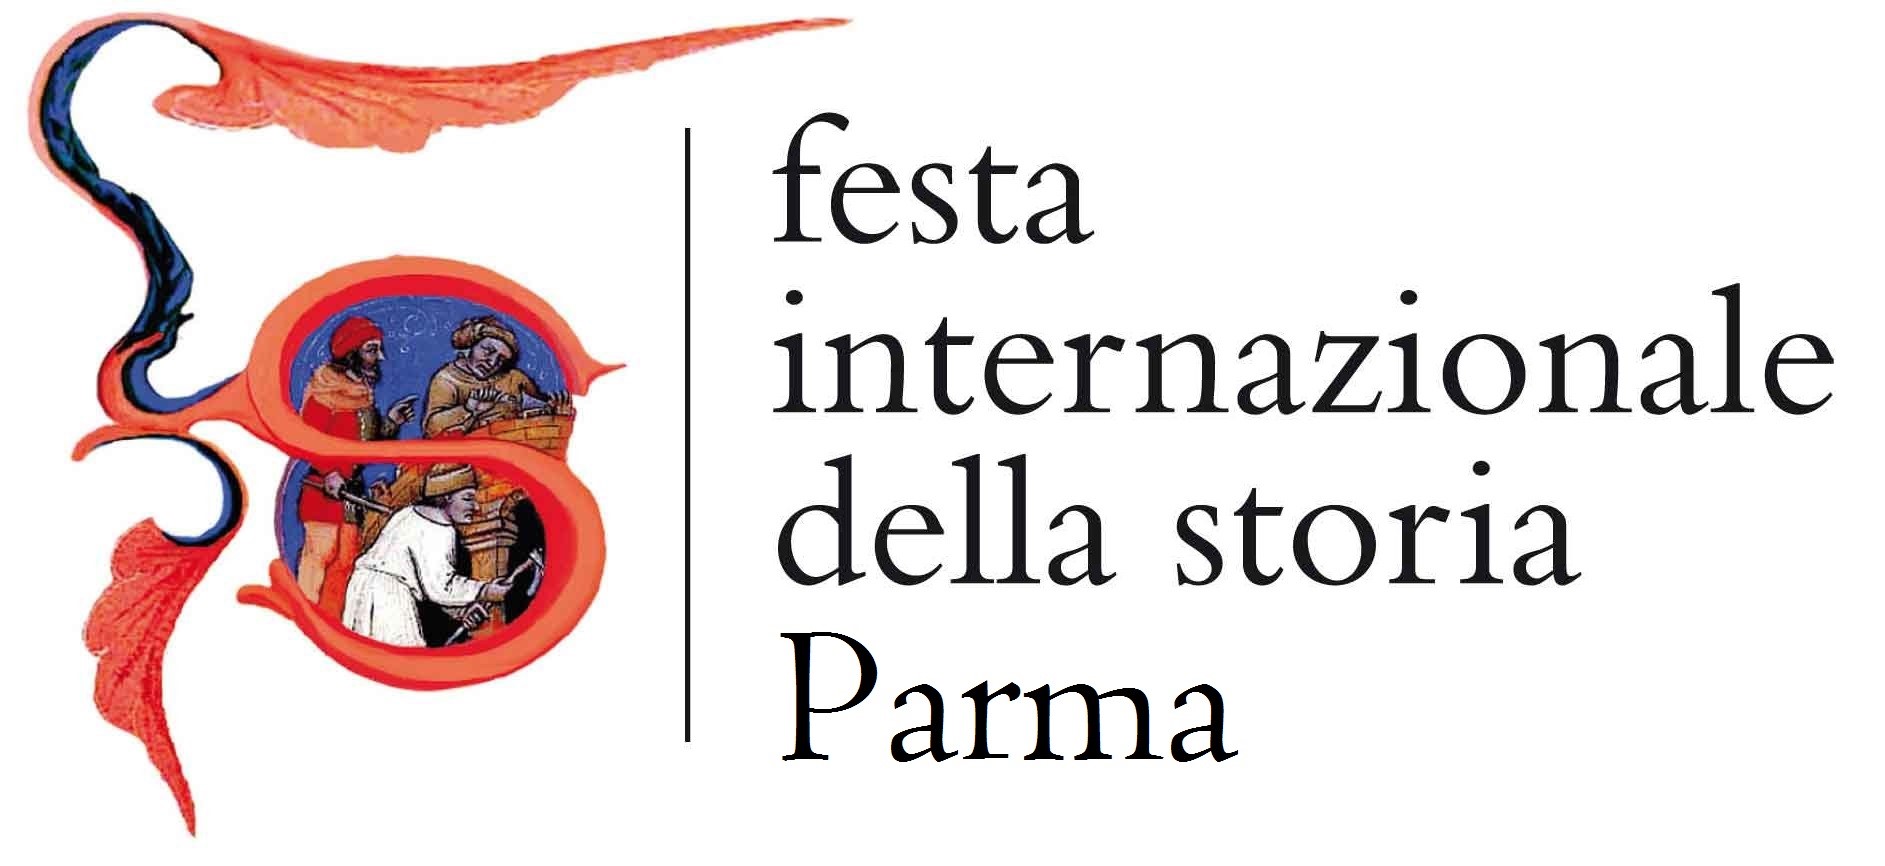 Festa Internazionale della Storia Parma